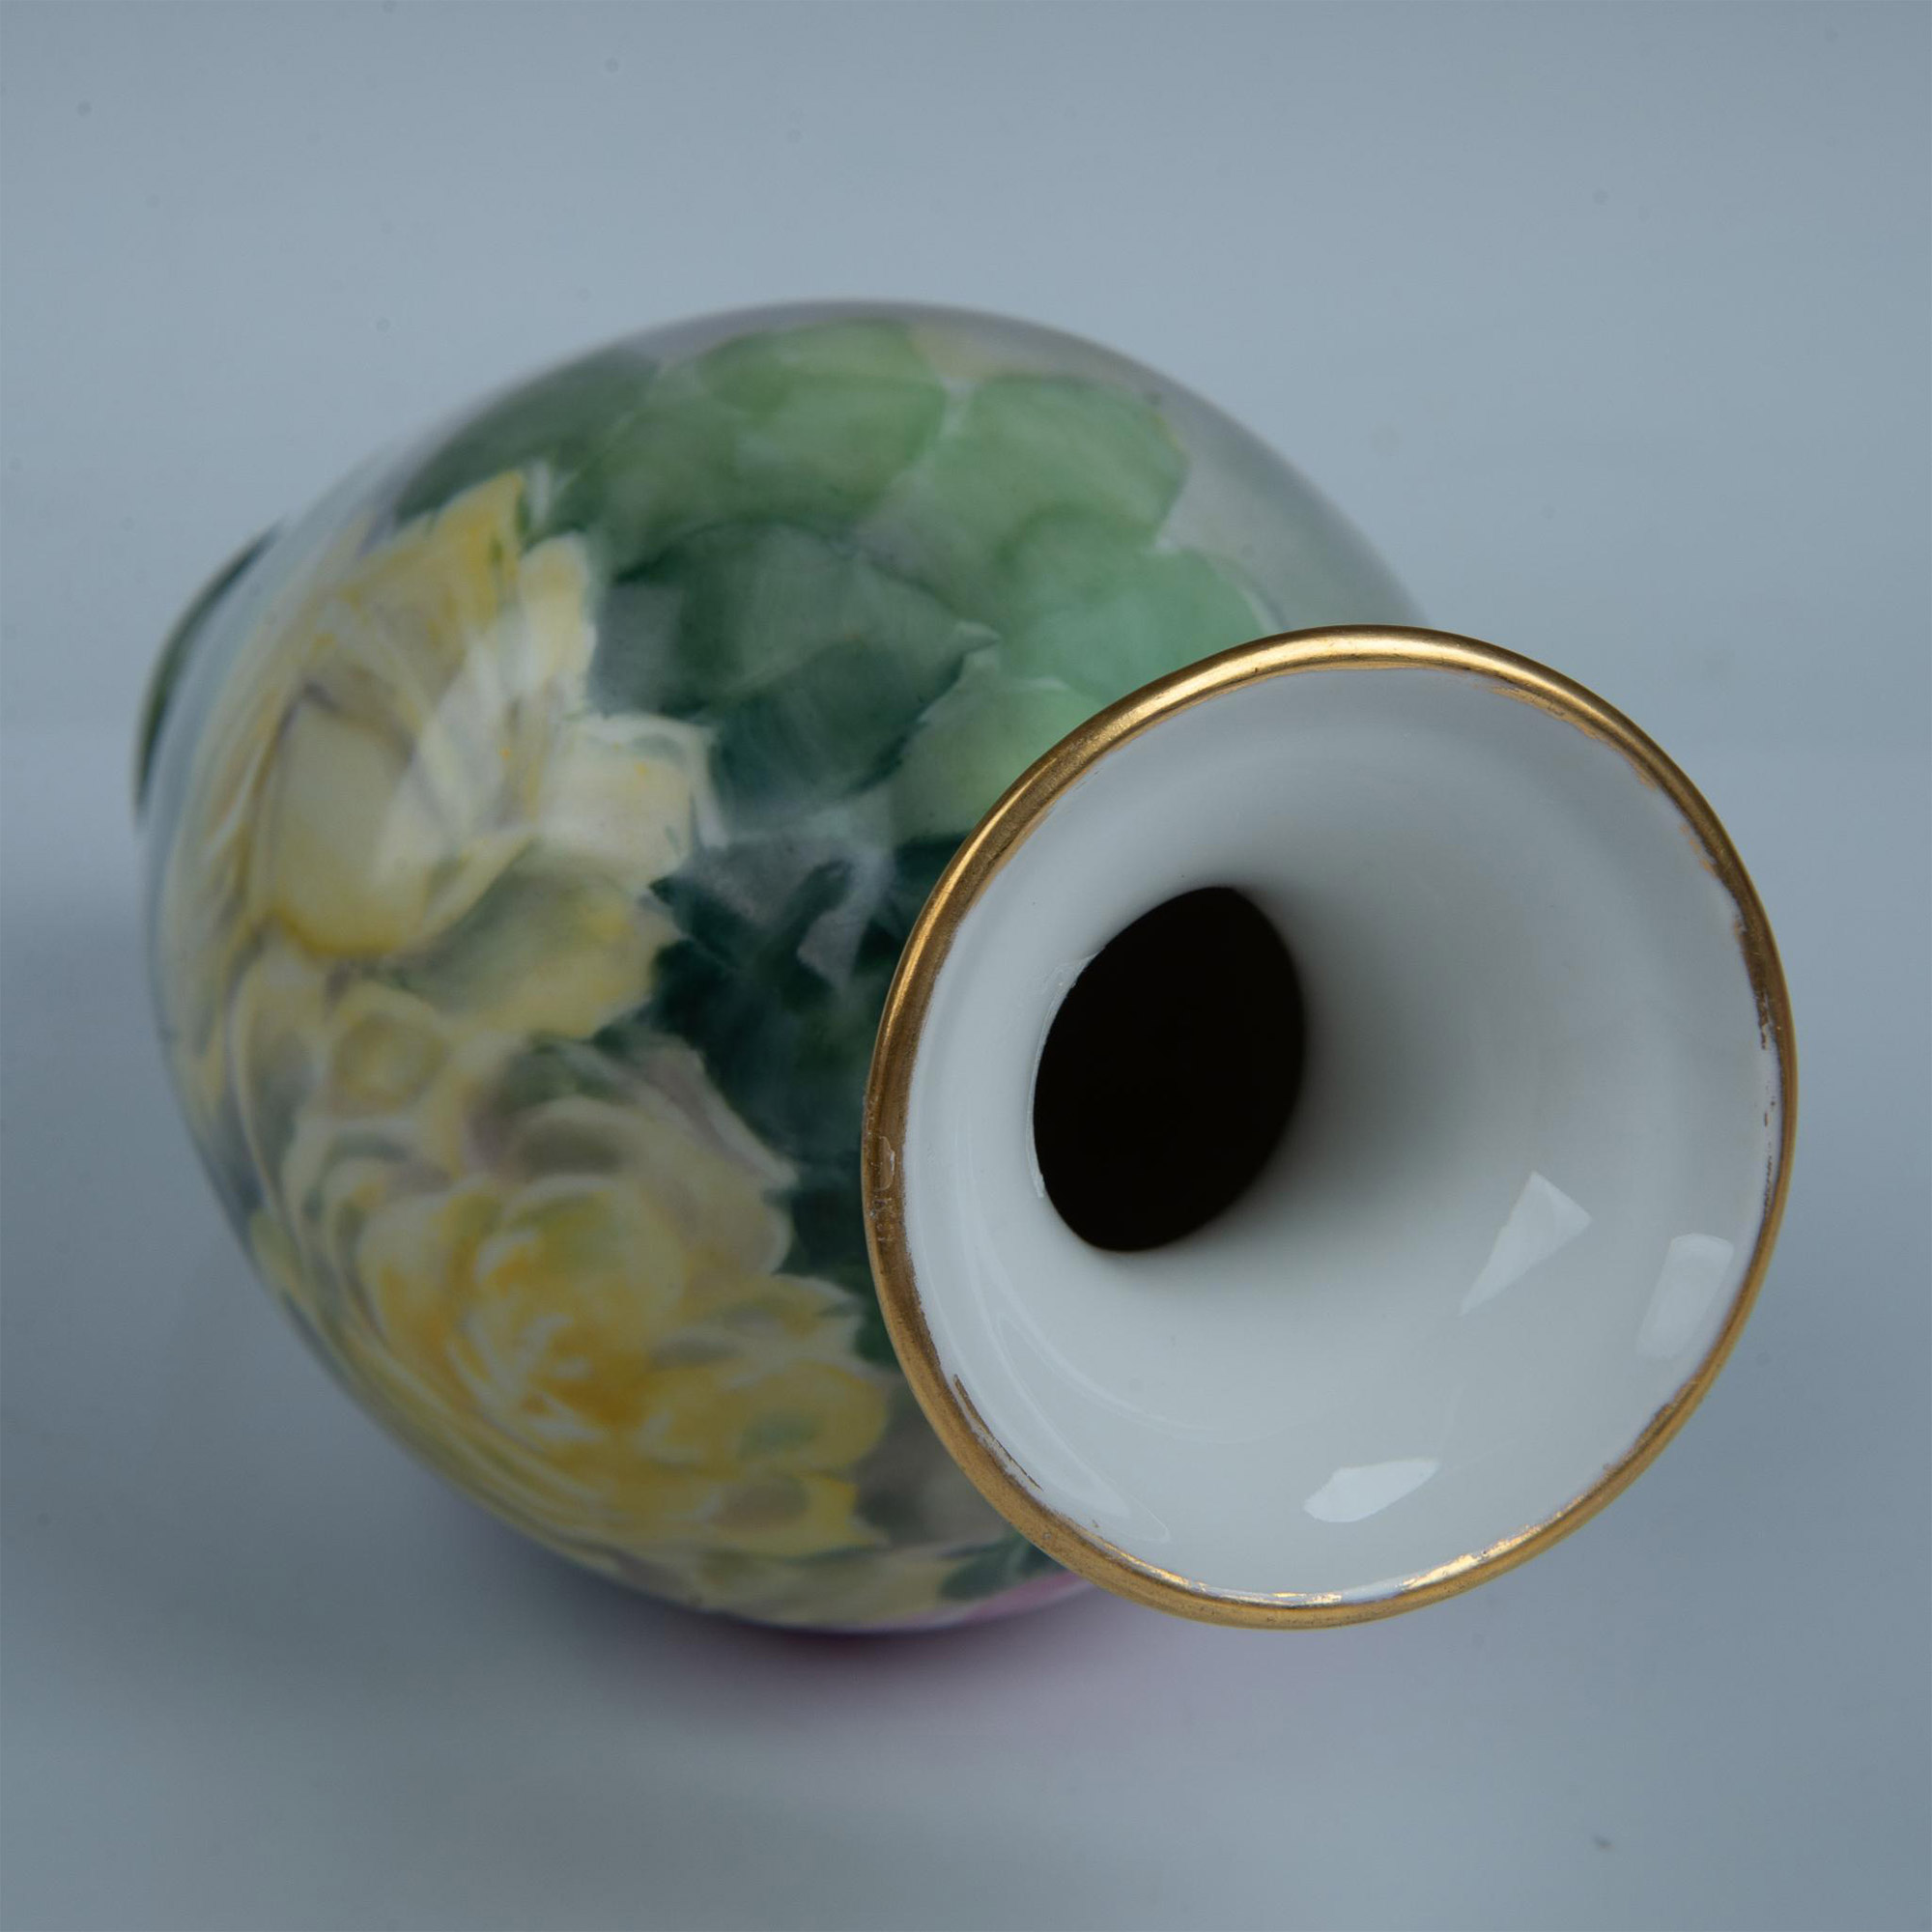 Tressemanes & Vogt by E.H. George Limoges Porcelain Vase - Image 5 of 5